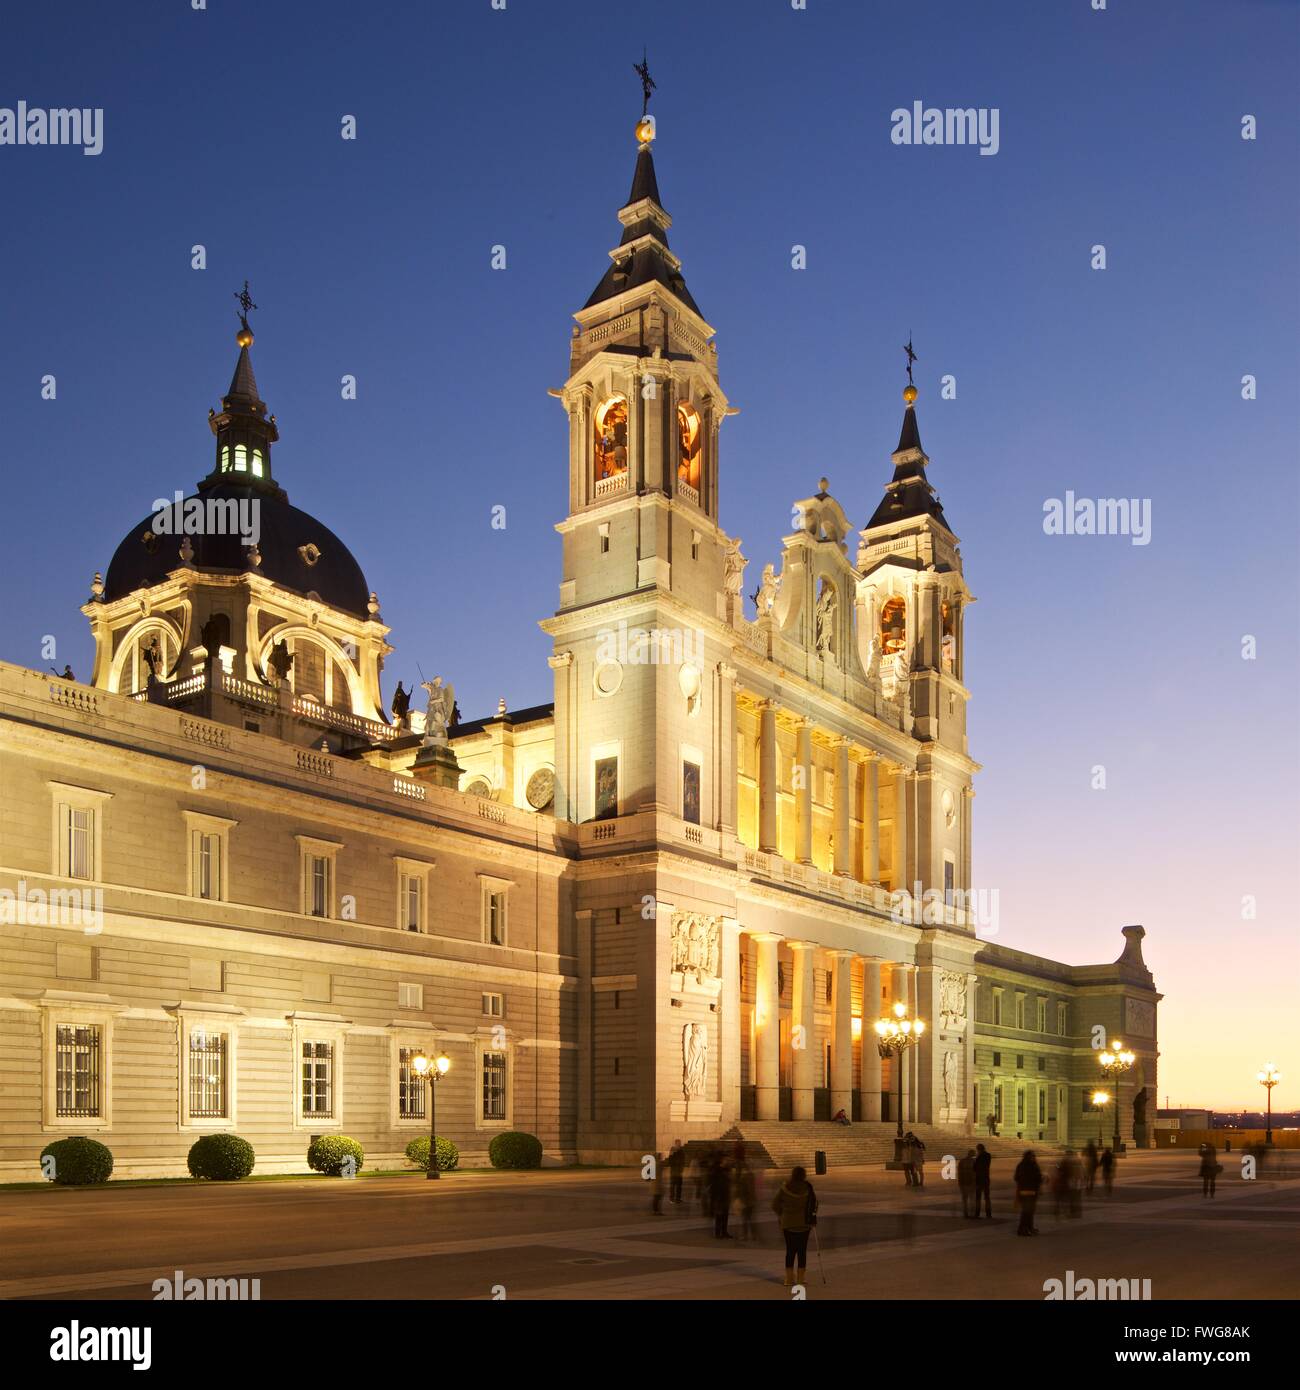 Una imagen de viaje de Madrid, en la catedral de La Almudena tomadas al atardecer Foto de stock